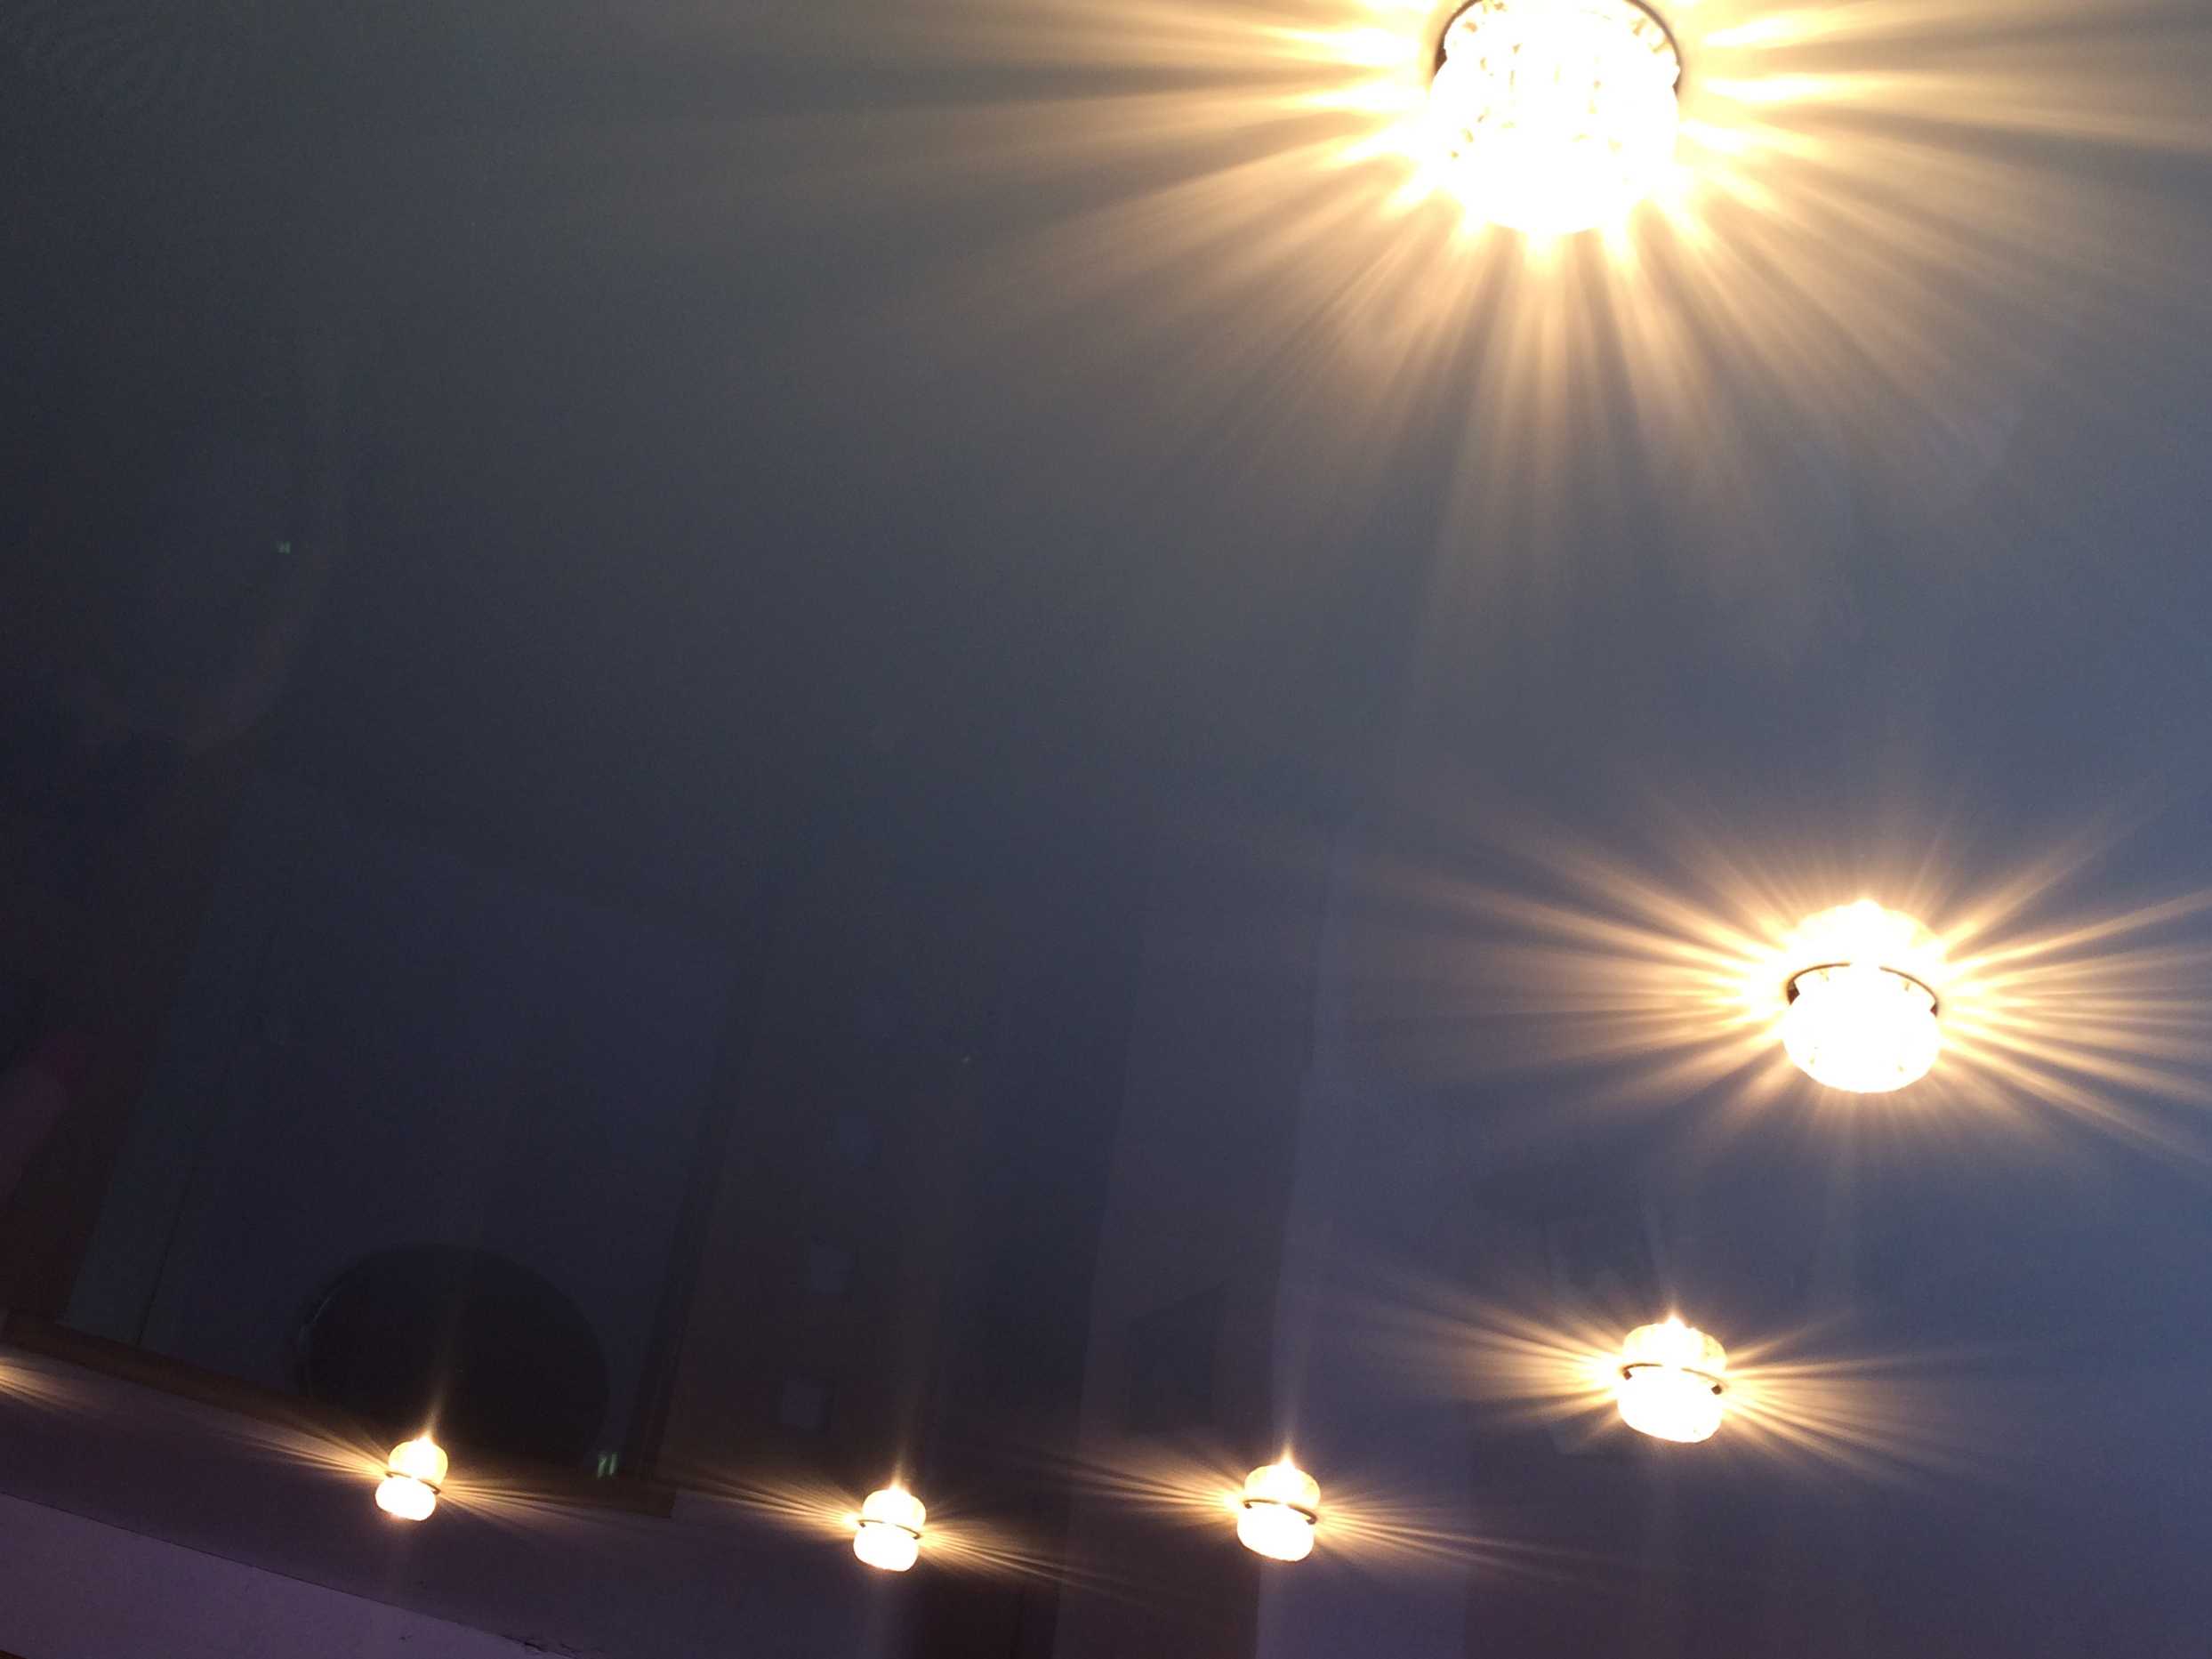 Правила размещения светильников на потолке - как и где следует размещать потолочные светильники (130 фото)